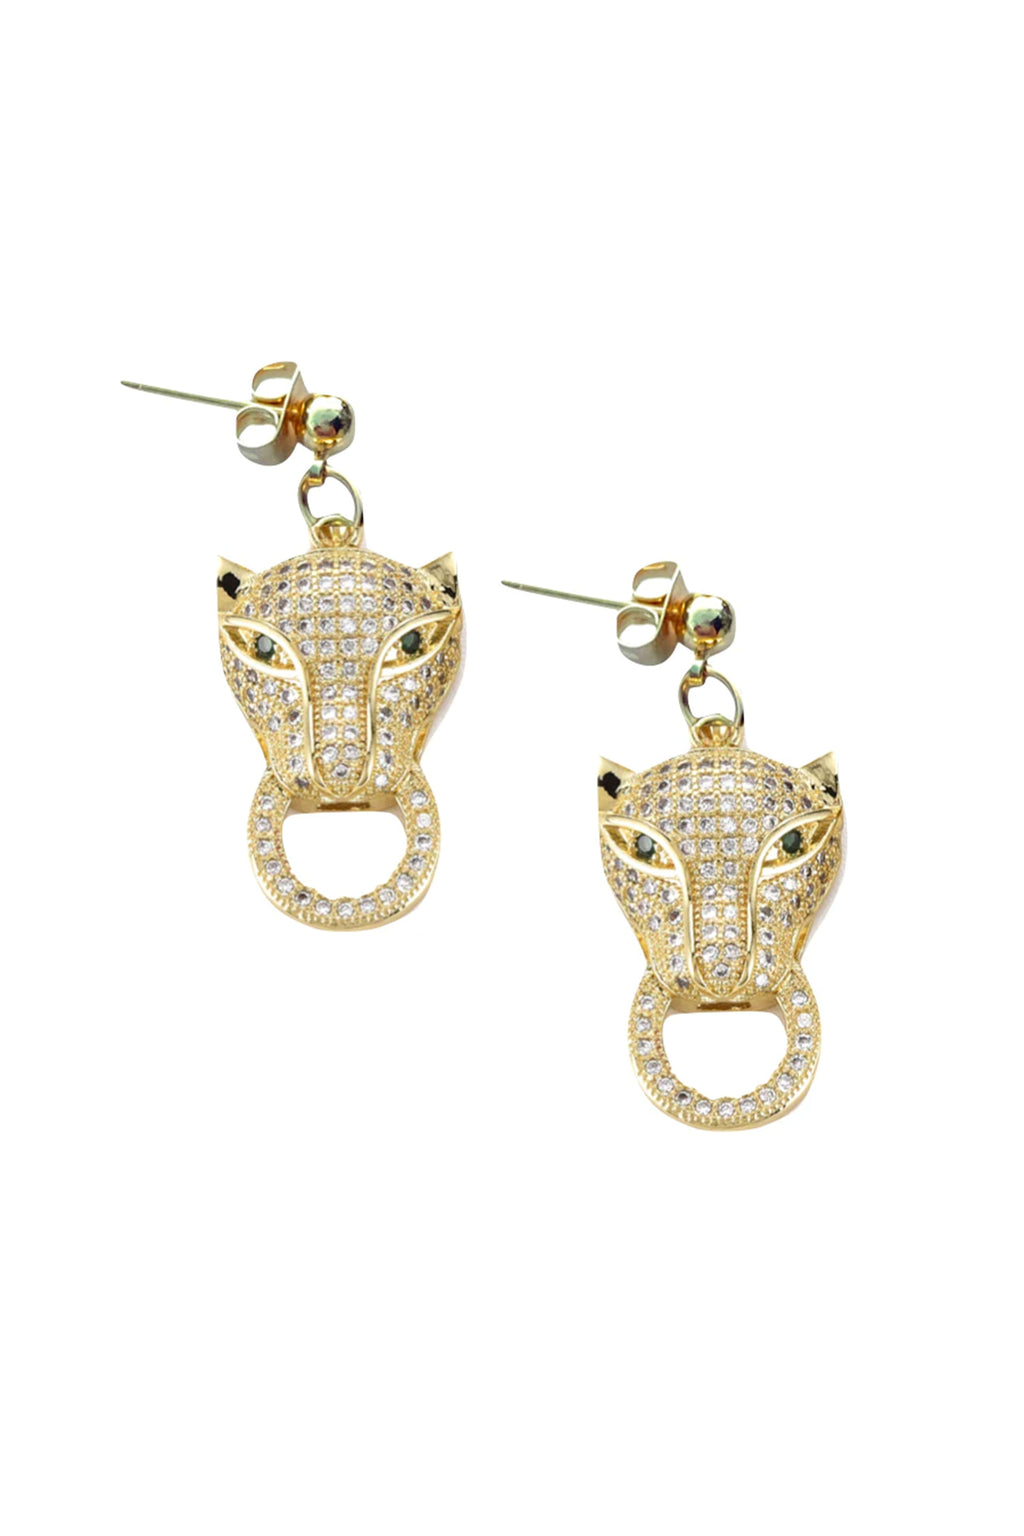 FARRAH B | Catty Jaguar Earrings - Gold